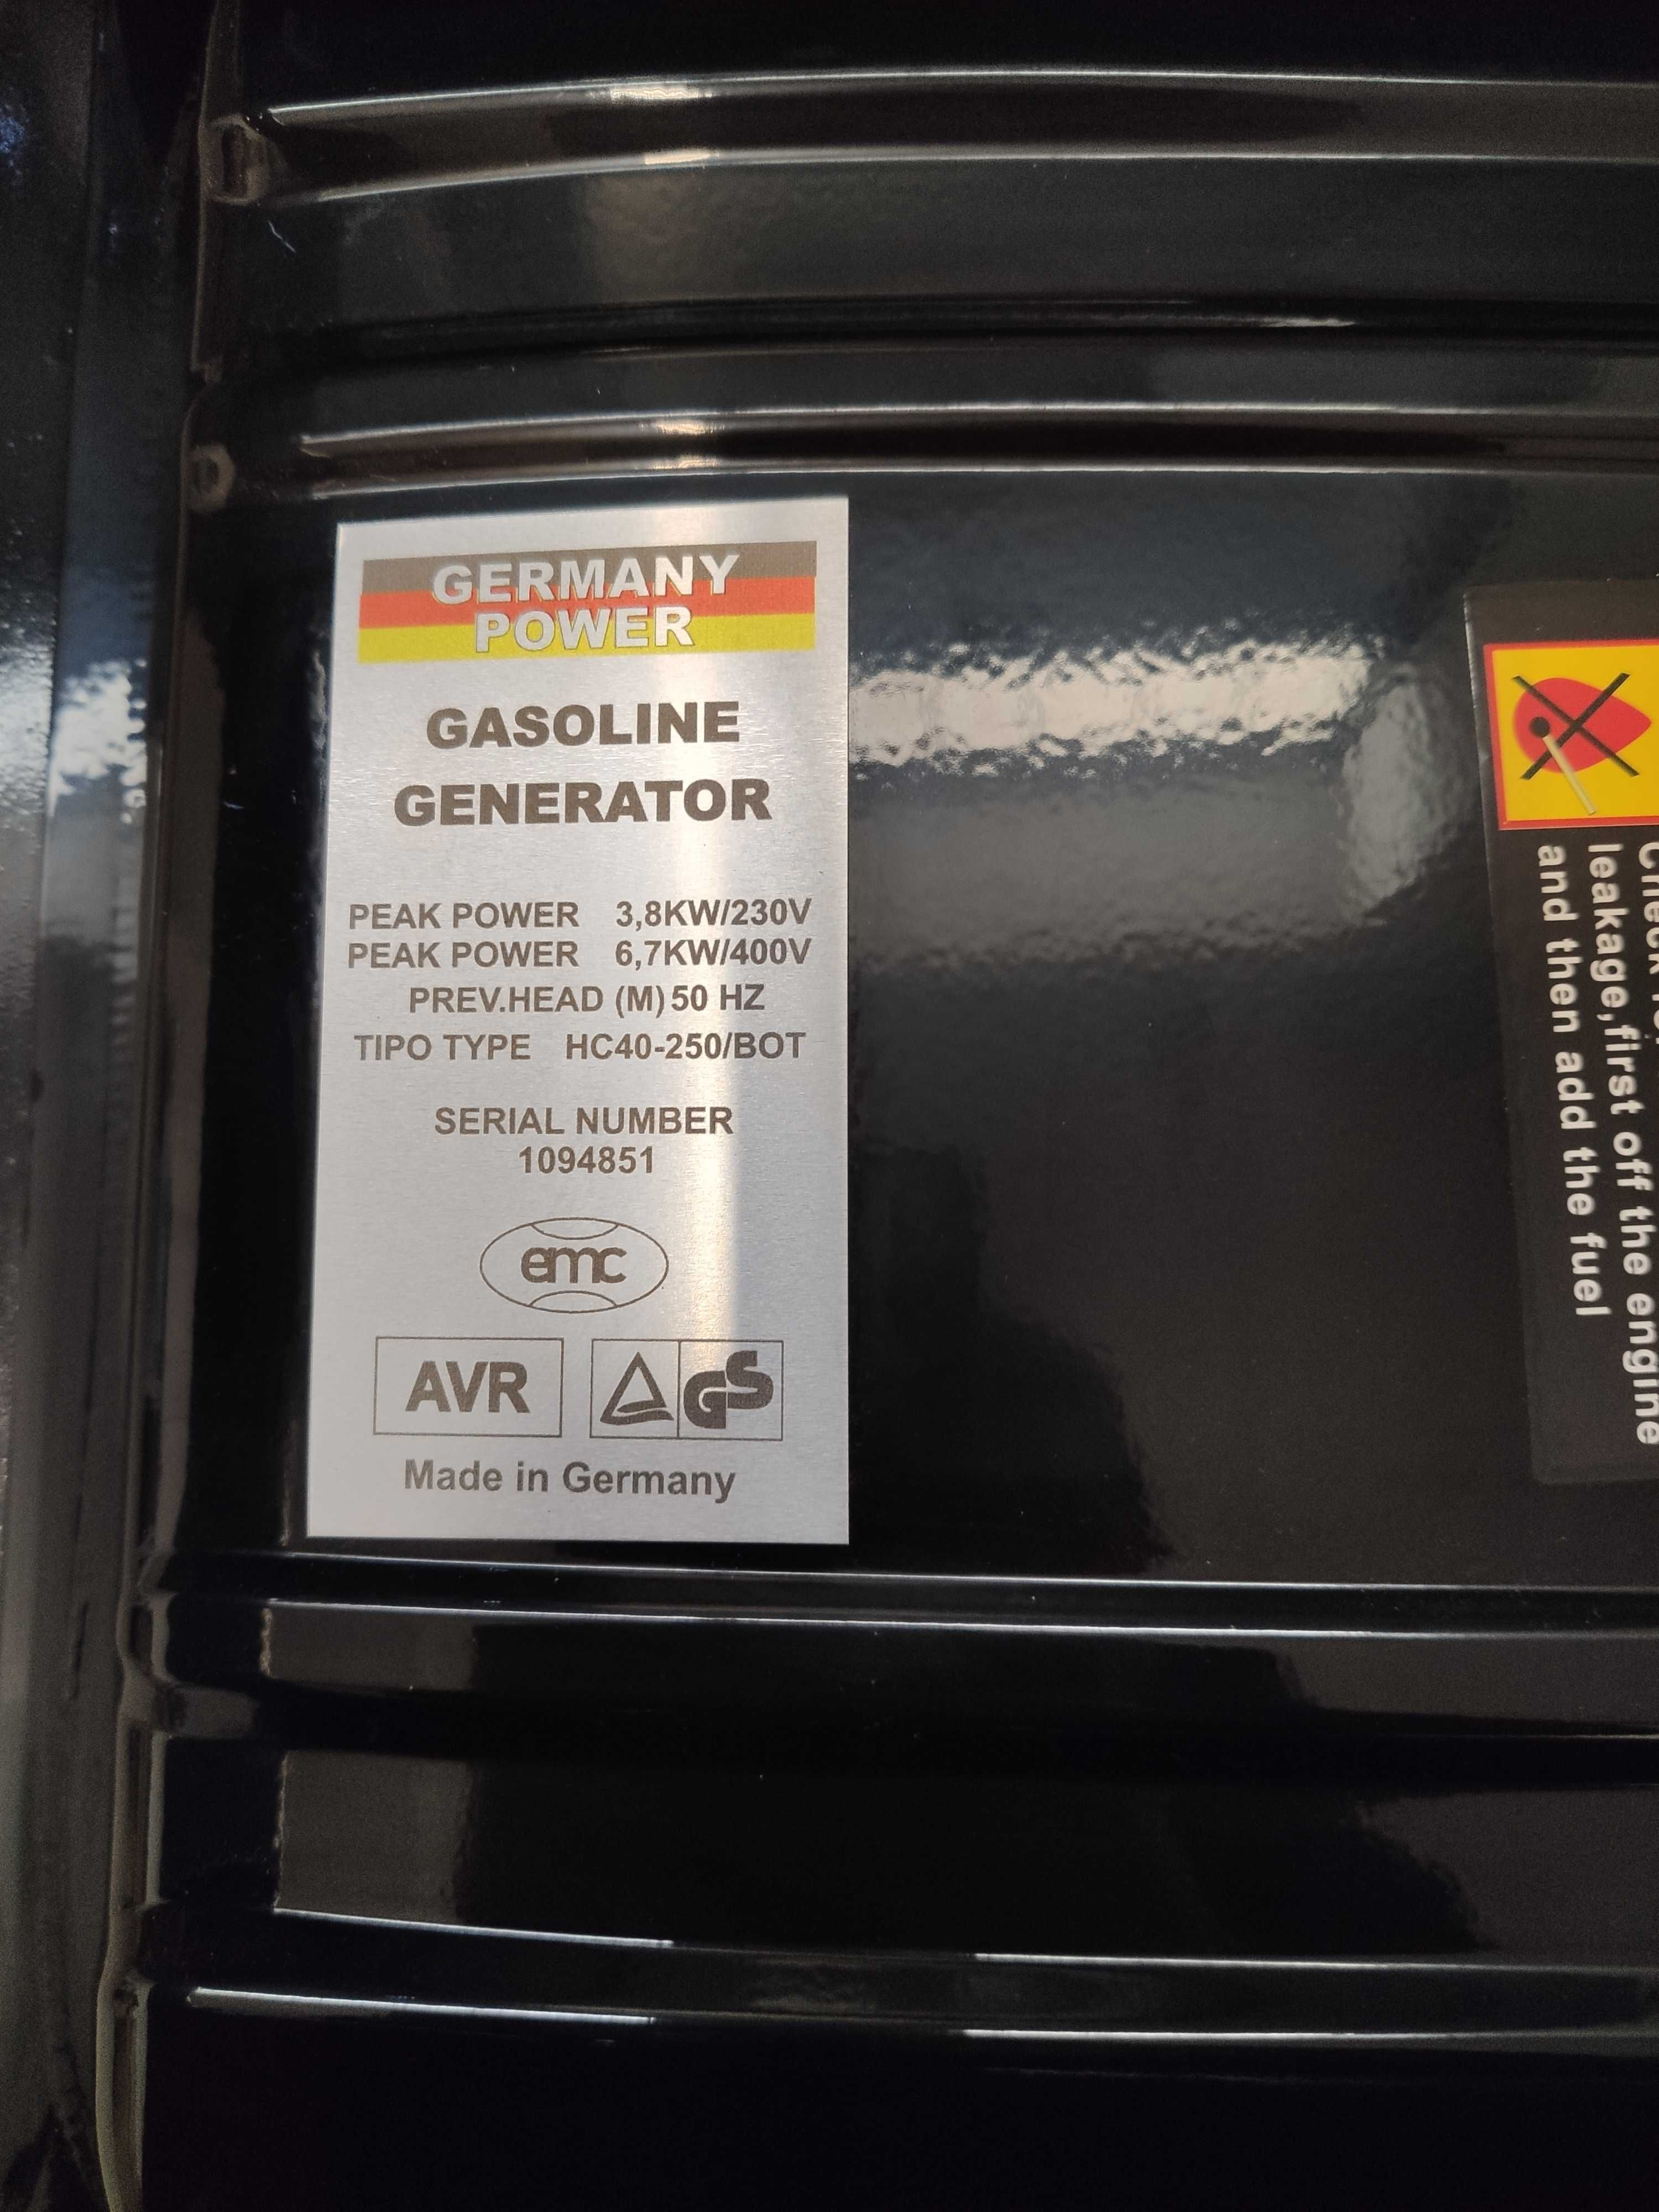 Agregat prądotwórczy FLOSENBURG FEG 537 generator 3,8kW/6,7kW 230/400V